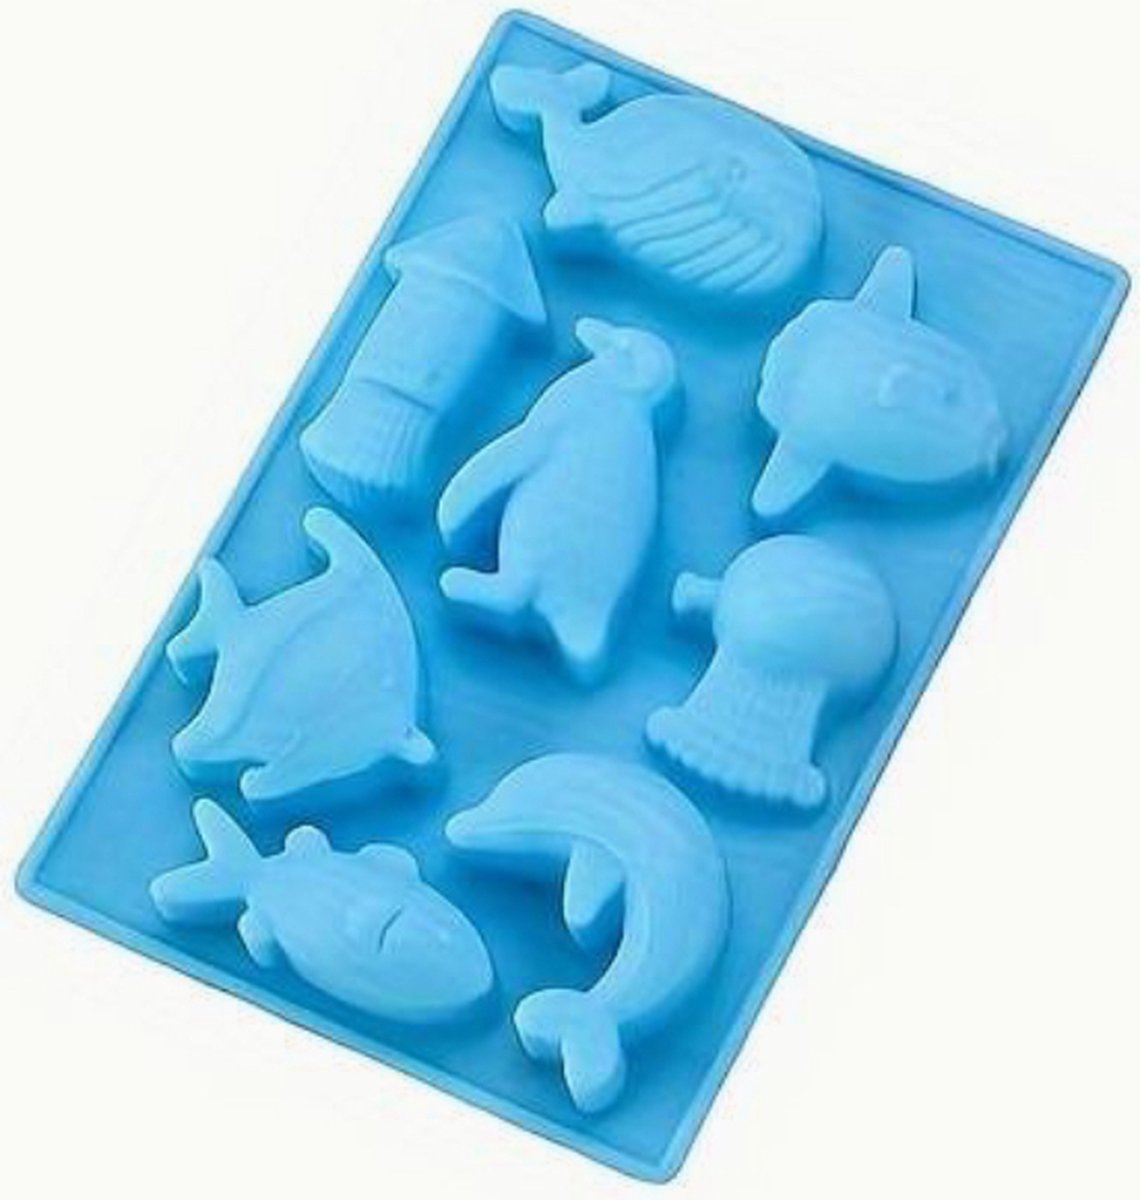 Siliconen vorm Pooldieren - bakken met kinderen - chocola - fondant - trakteren - DIY snoep maken - vaatwasmachine bestendig